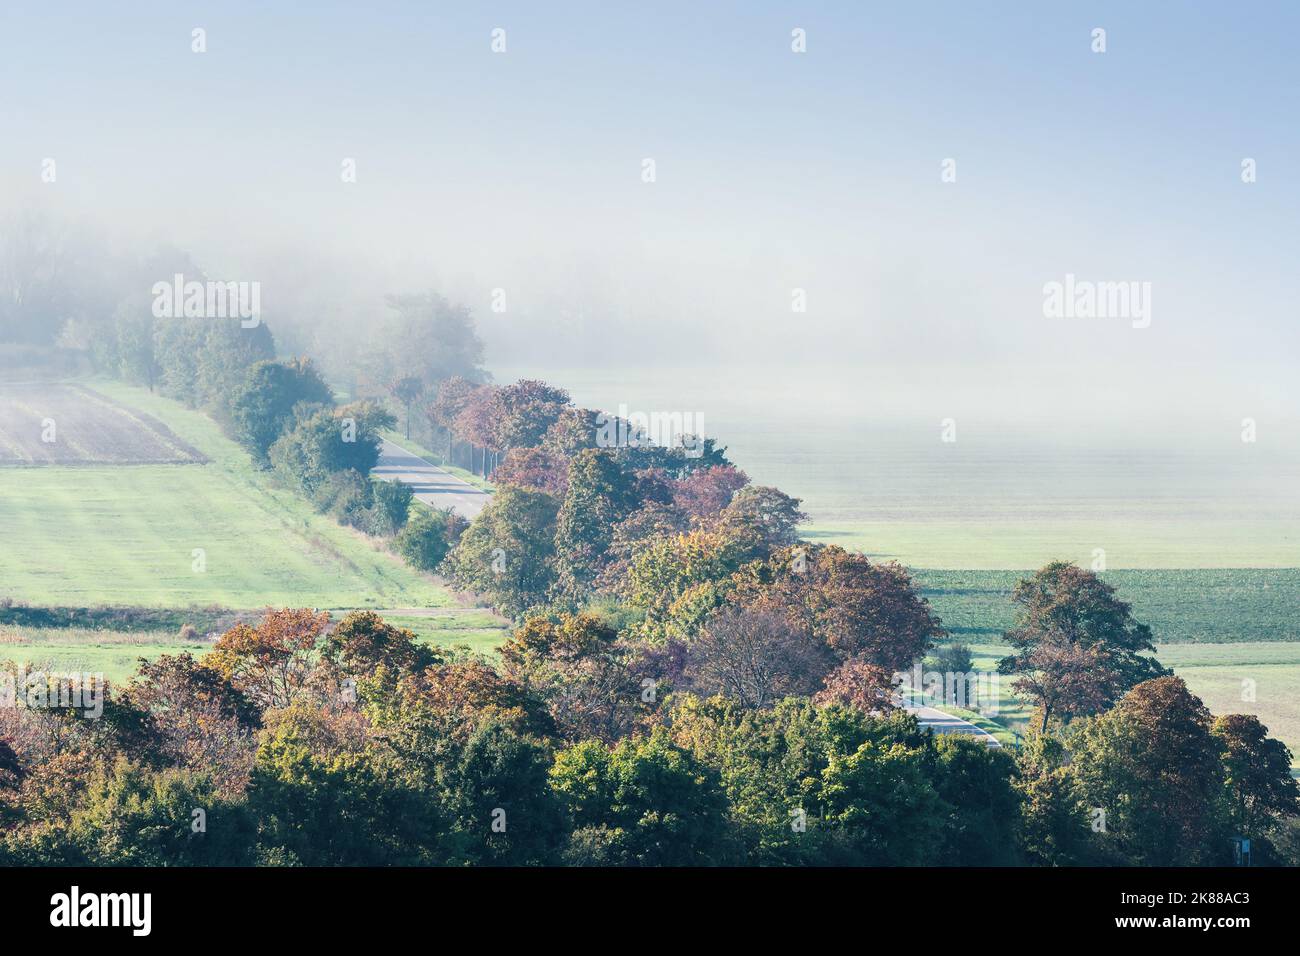 Une route de campagne vue à distance sous un angle s'étend entre les champs ensoleillés et le brouillard du matin. Banque D'Images